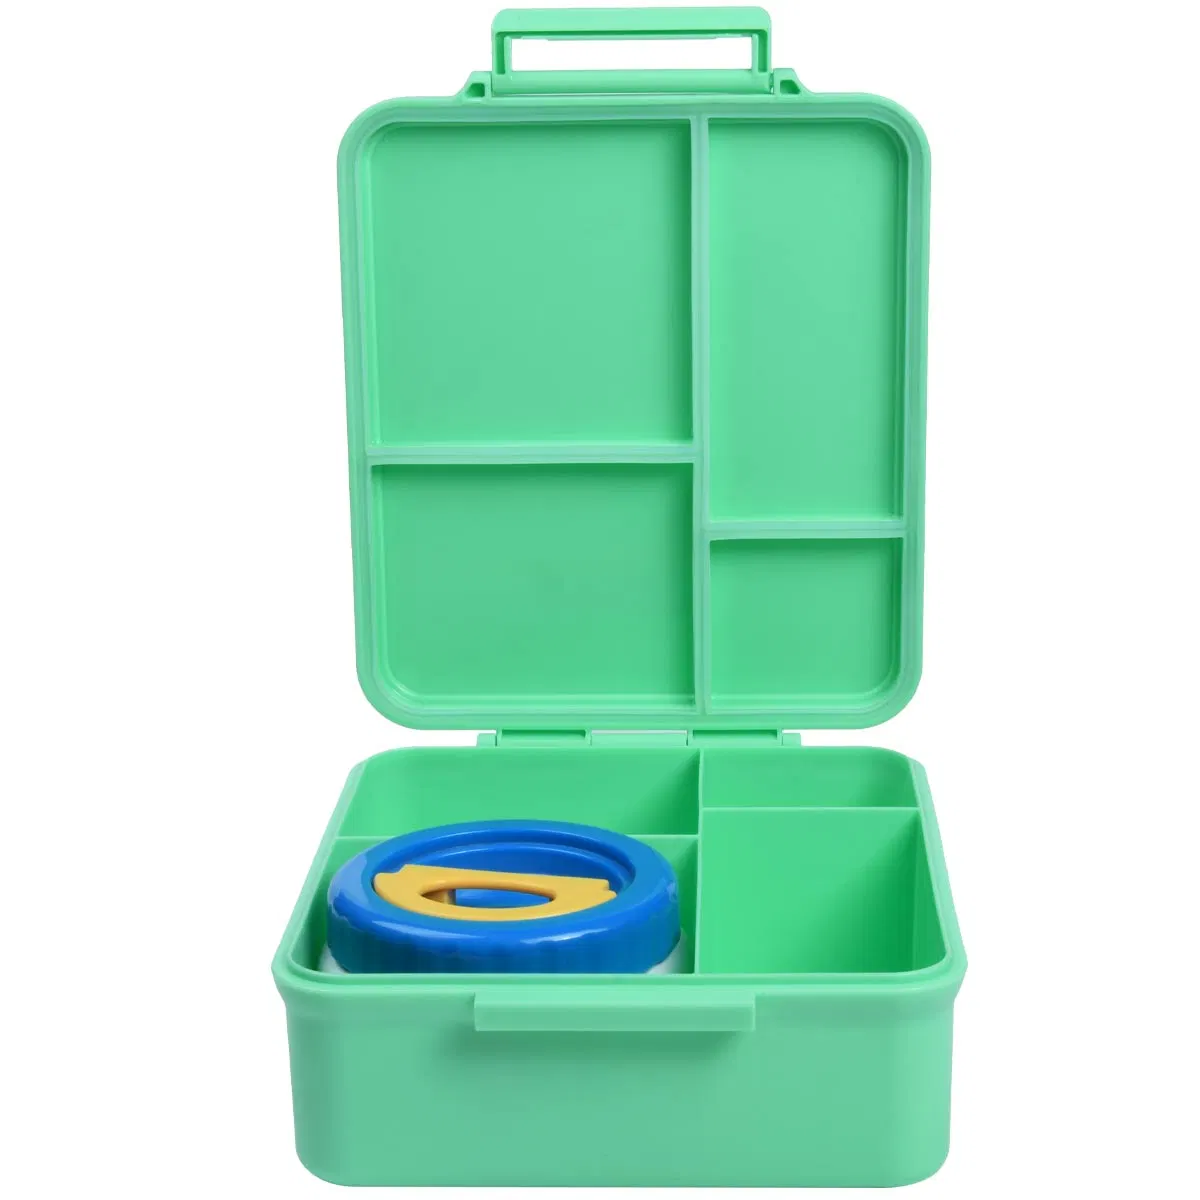 Aohea Lunchbox plástico almuerzo a prueba de fugas Bento Box Kit para adultos y niños